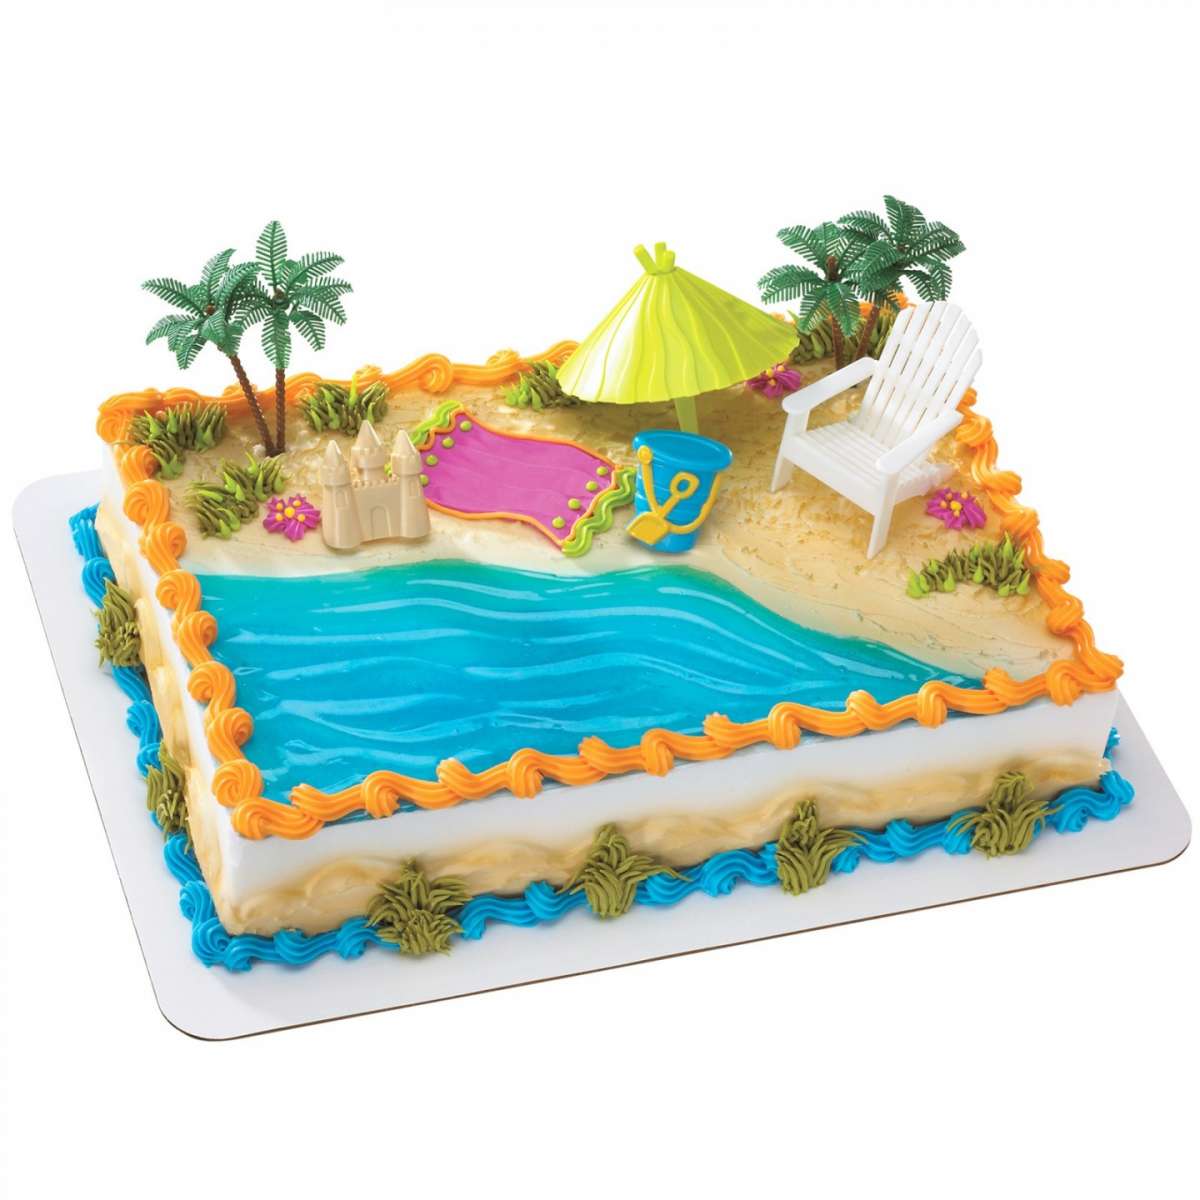 La torta spiaggia